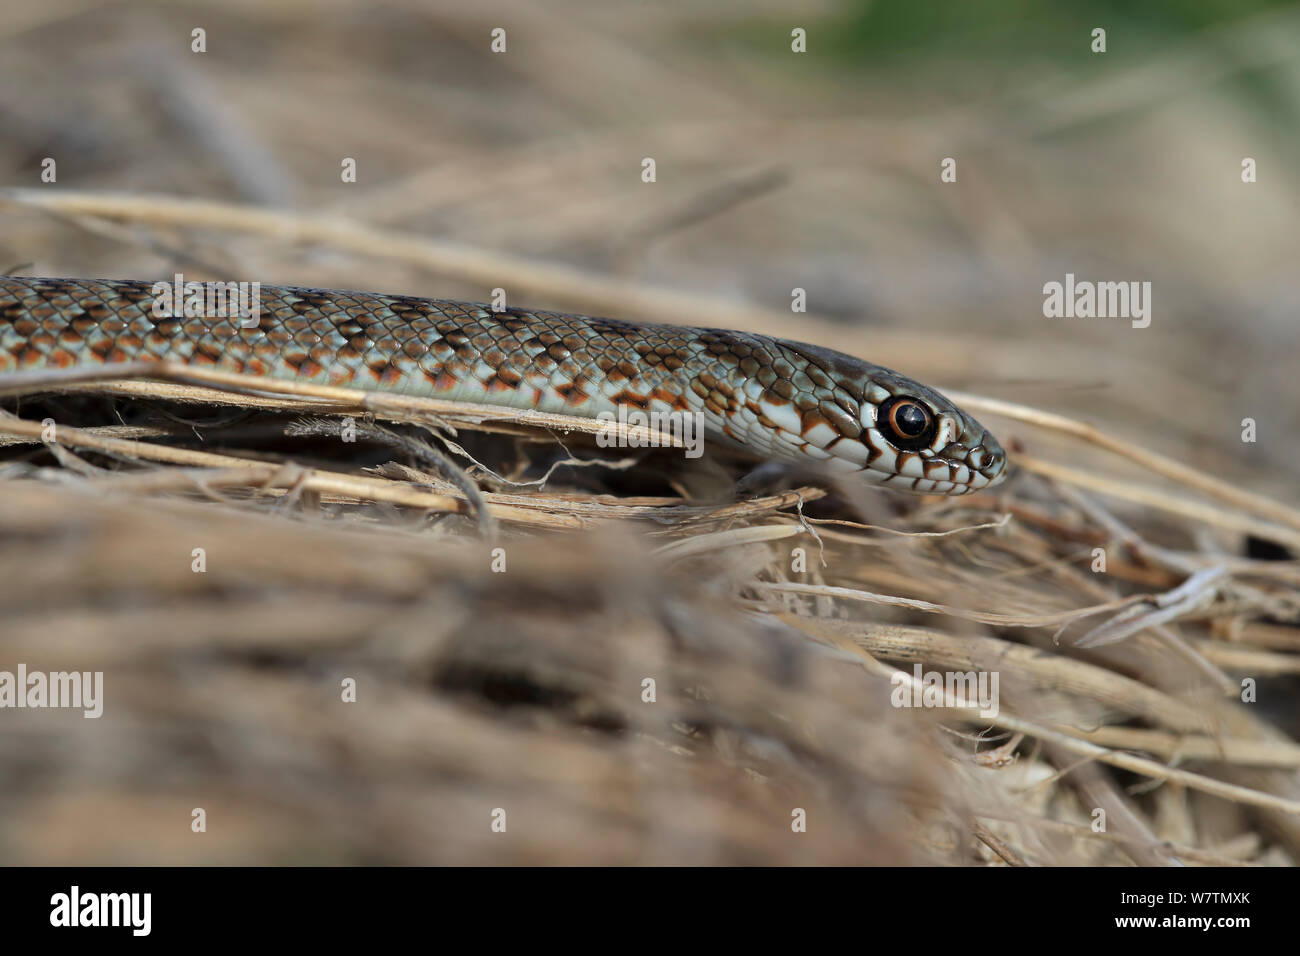 Large Caspian Whip Snake (Dolichophis caspius) Bulgaria,  September. Stock Photo